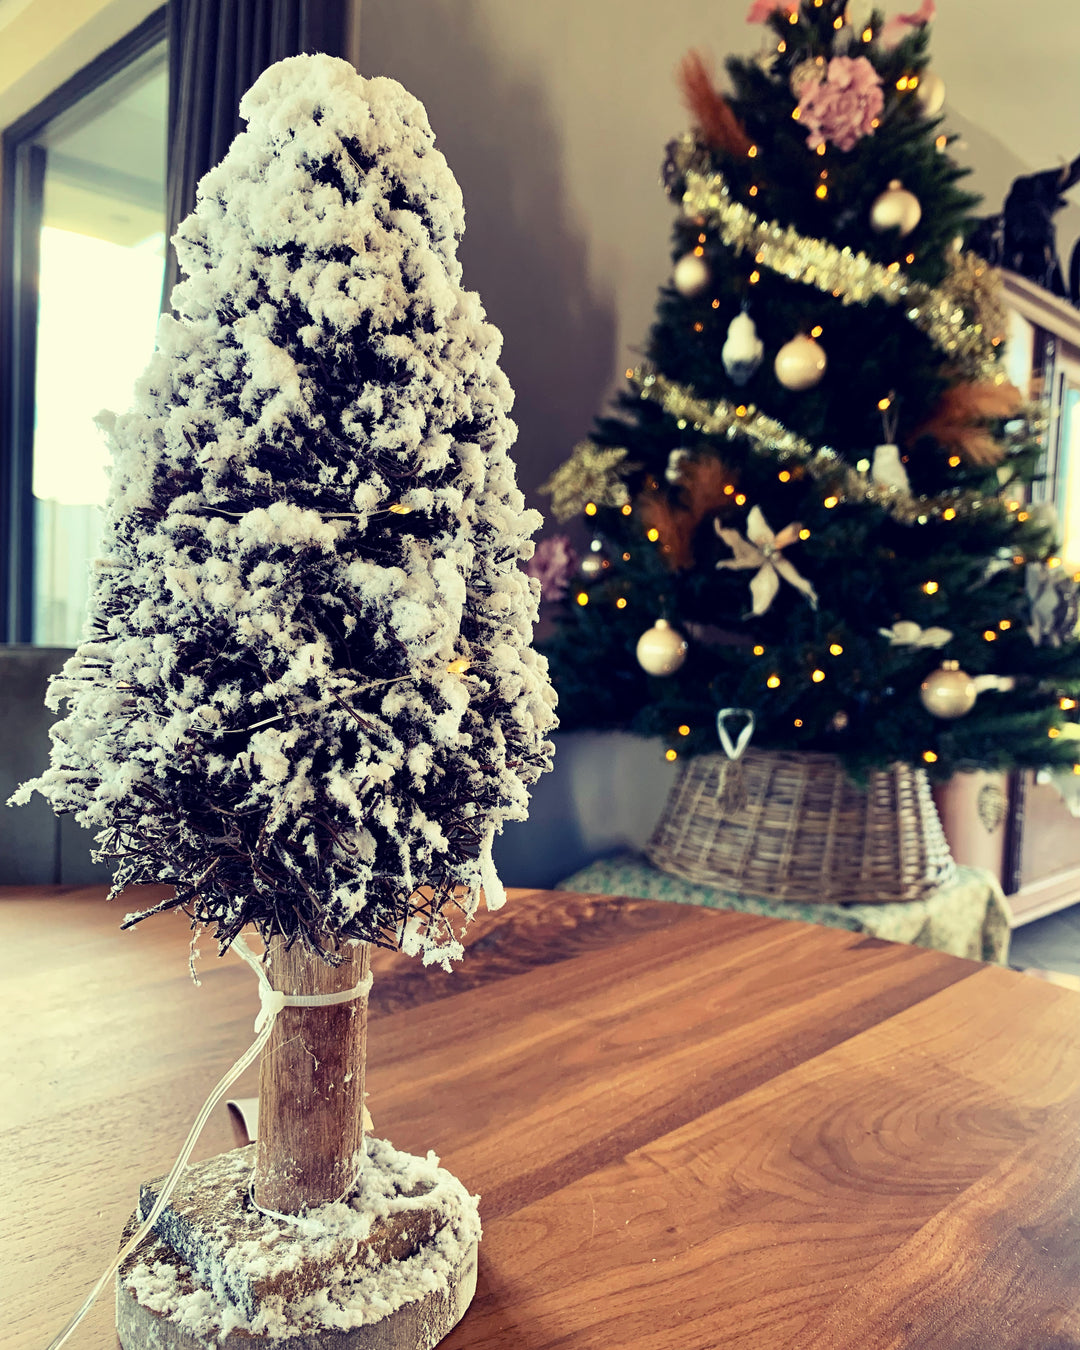 Kerstboom met lampjes en sneeuw - groen op hout - ↑30 cm / ⌀ 10 cm